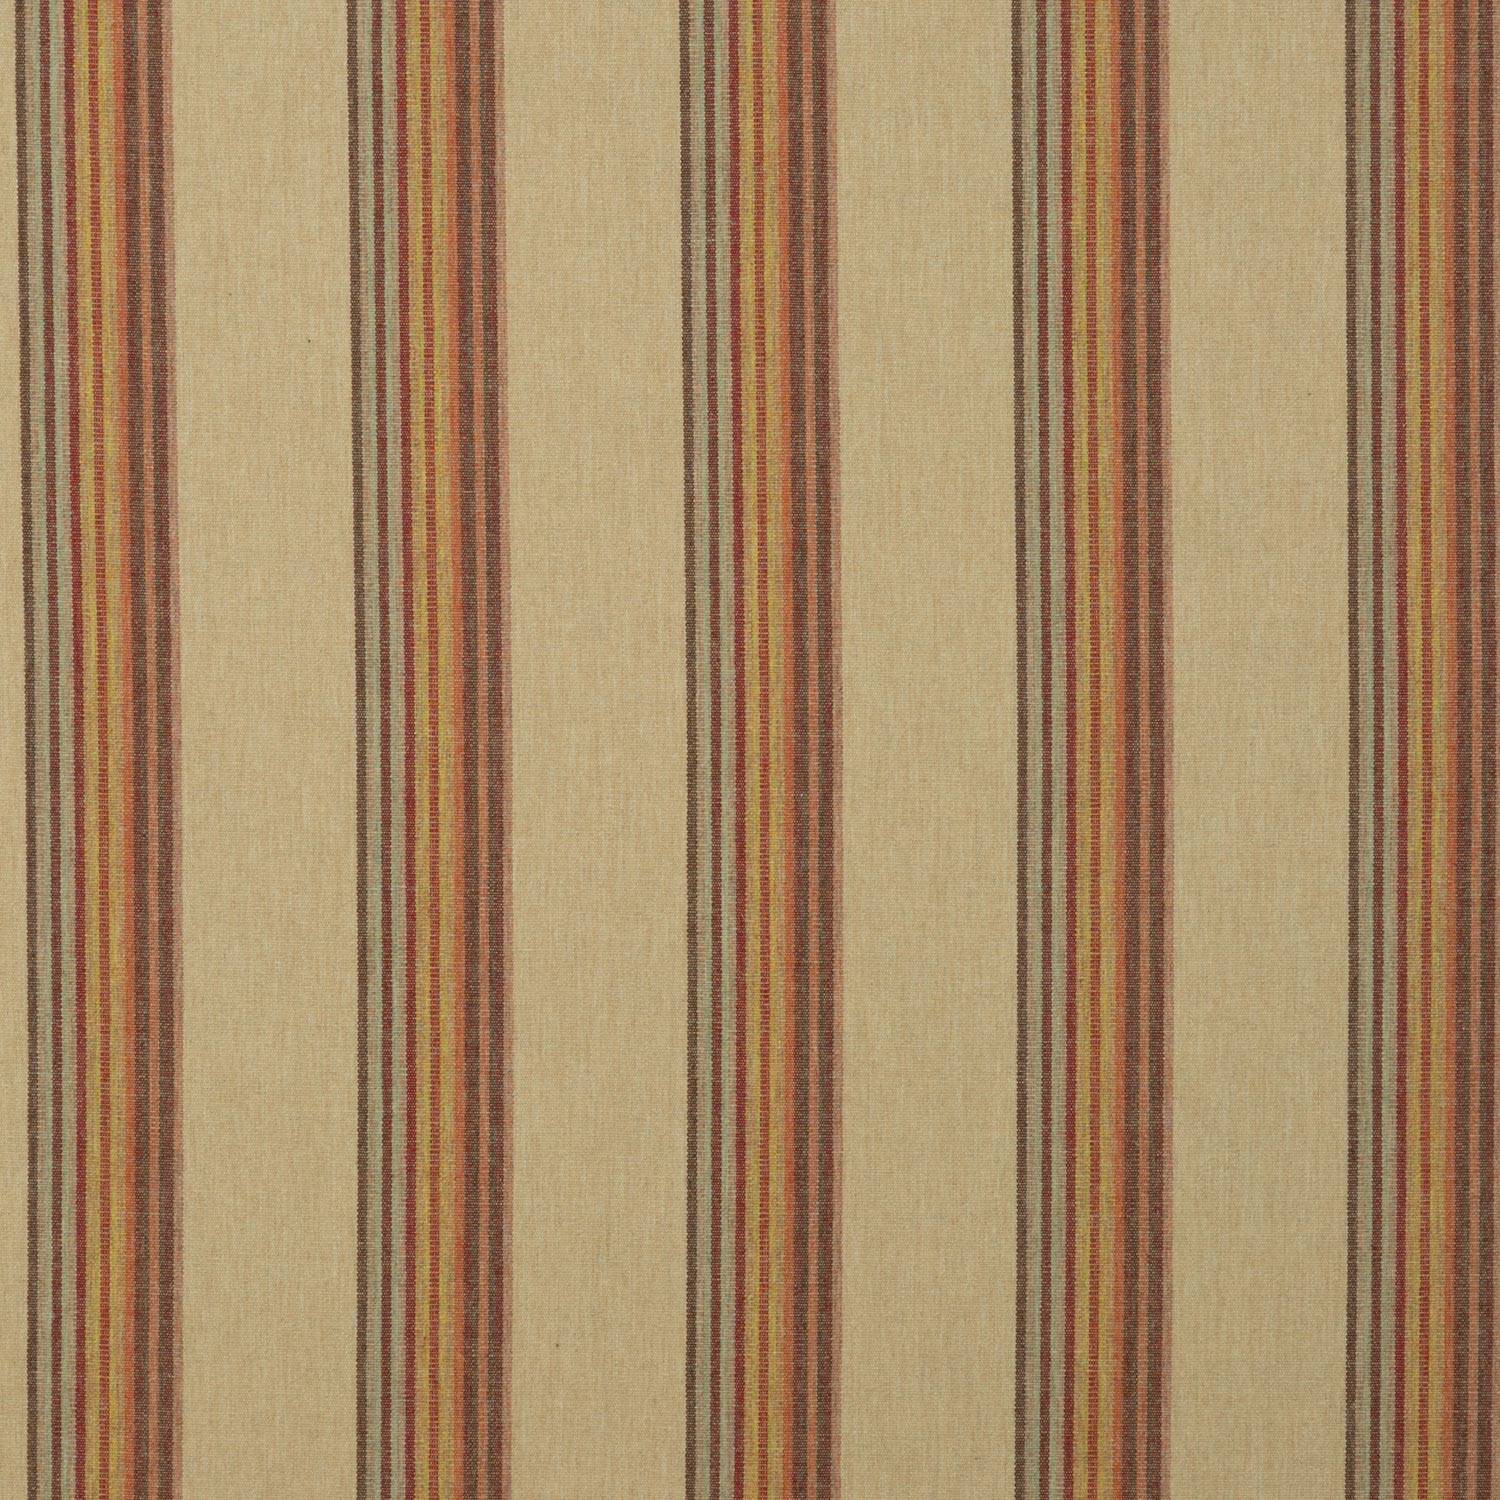 Twelve Bar Stripe